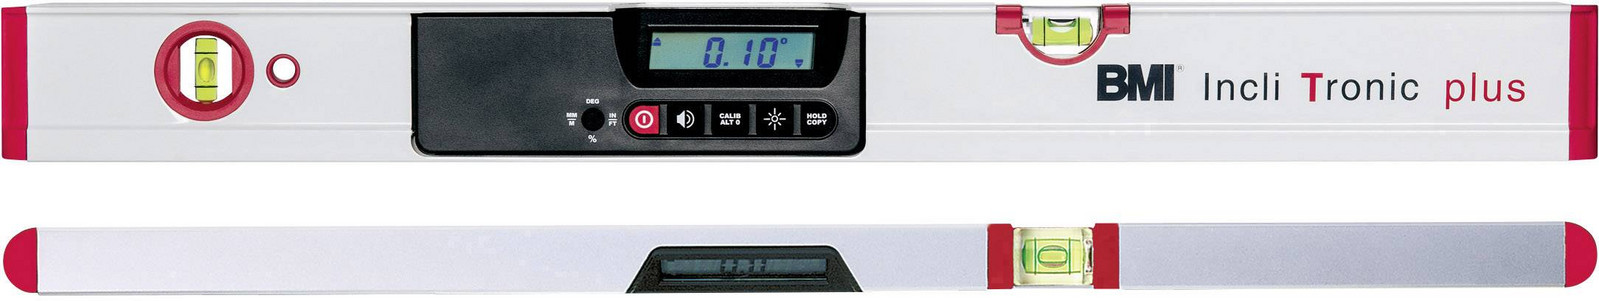 BMI 601060 digitální vodováha 0.5 mm/m